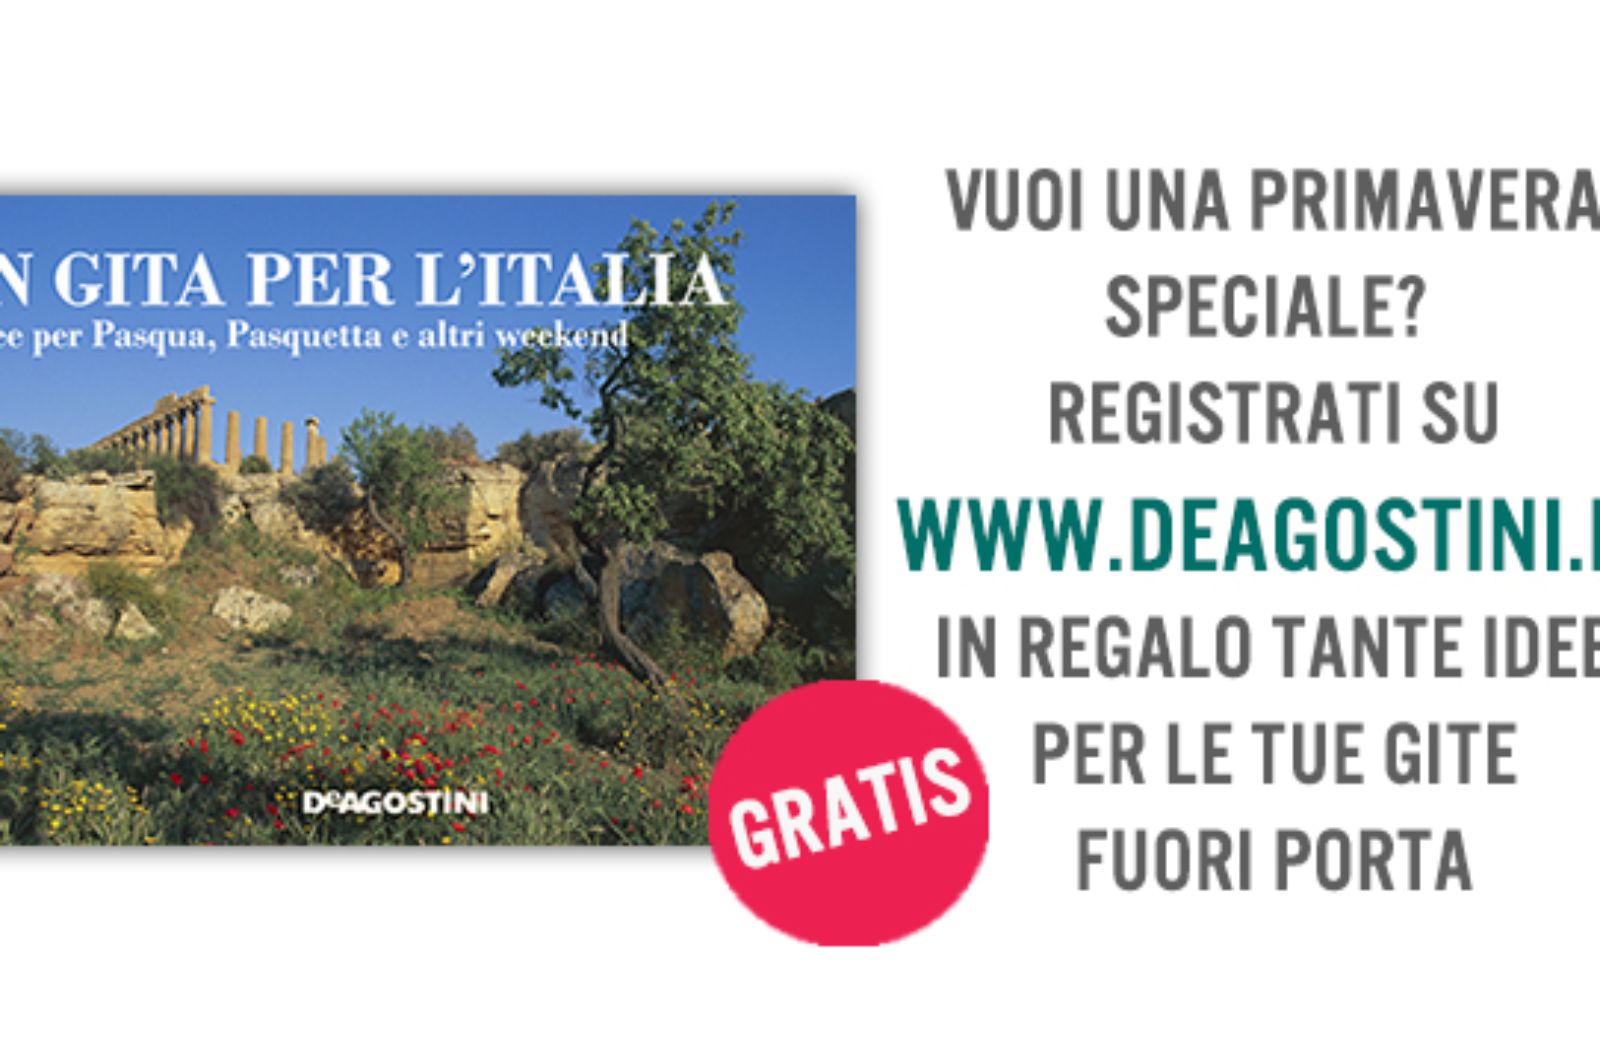 “In gita per l’Italia”, l’eBook in regalo per Pasquetta